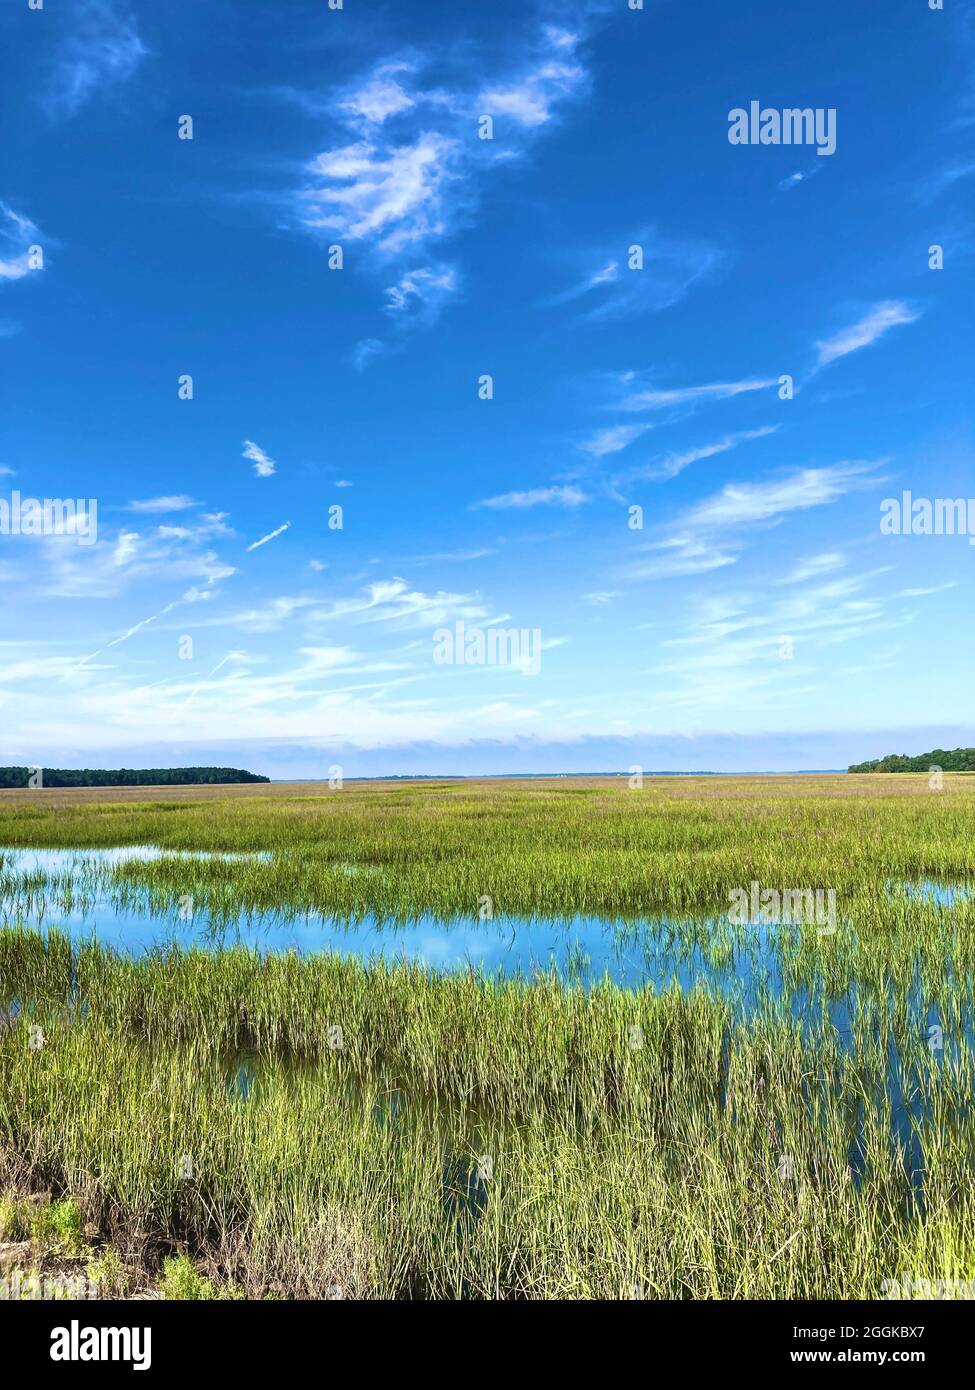 St. Helena Island, South Carolina. Marschland dominiert von krautigen Pflanzenarten. Sümpfe bieten Lebensraum für viele Arten von Wirbellosen, Fischen, Amphibien, Wasservögeln und Meeressäugern Stockfoto